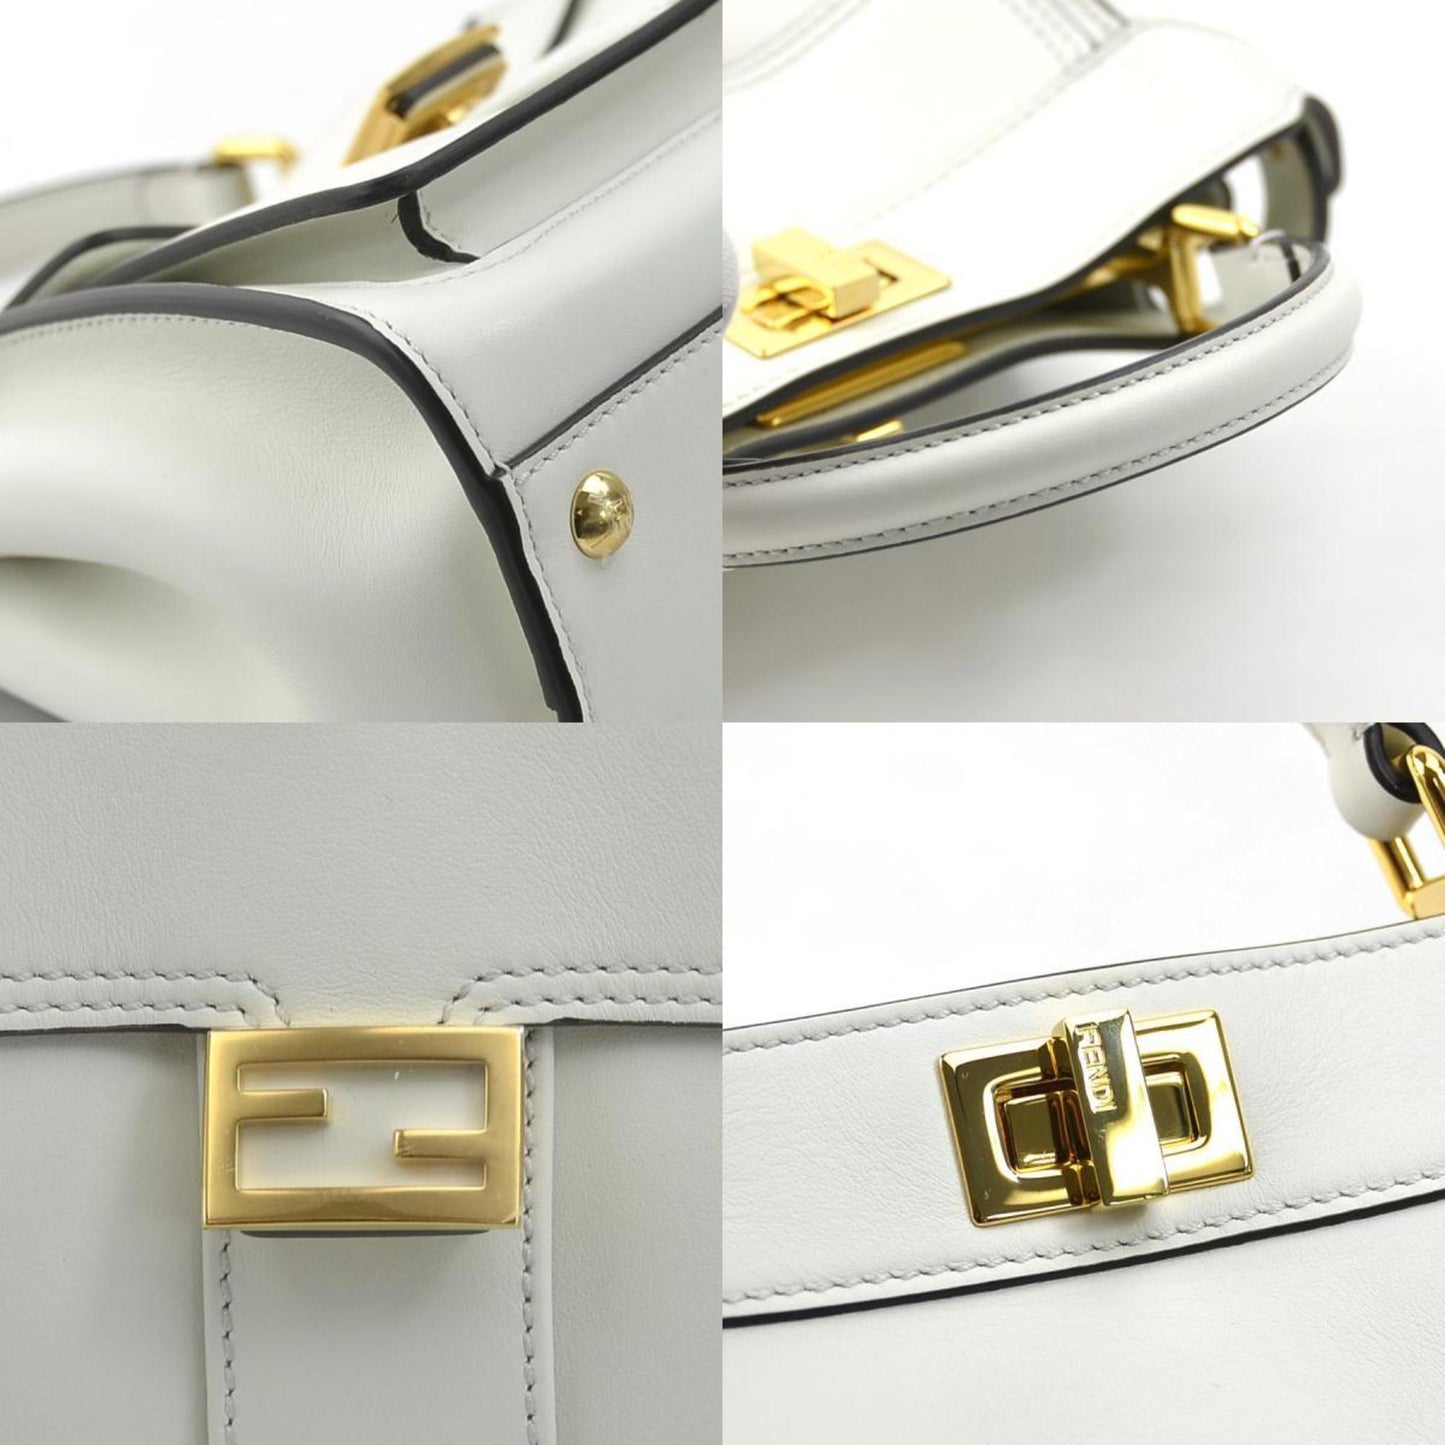 Fendi Women's Elegant Leather Handbag with Timeless Design in White